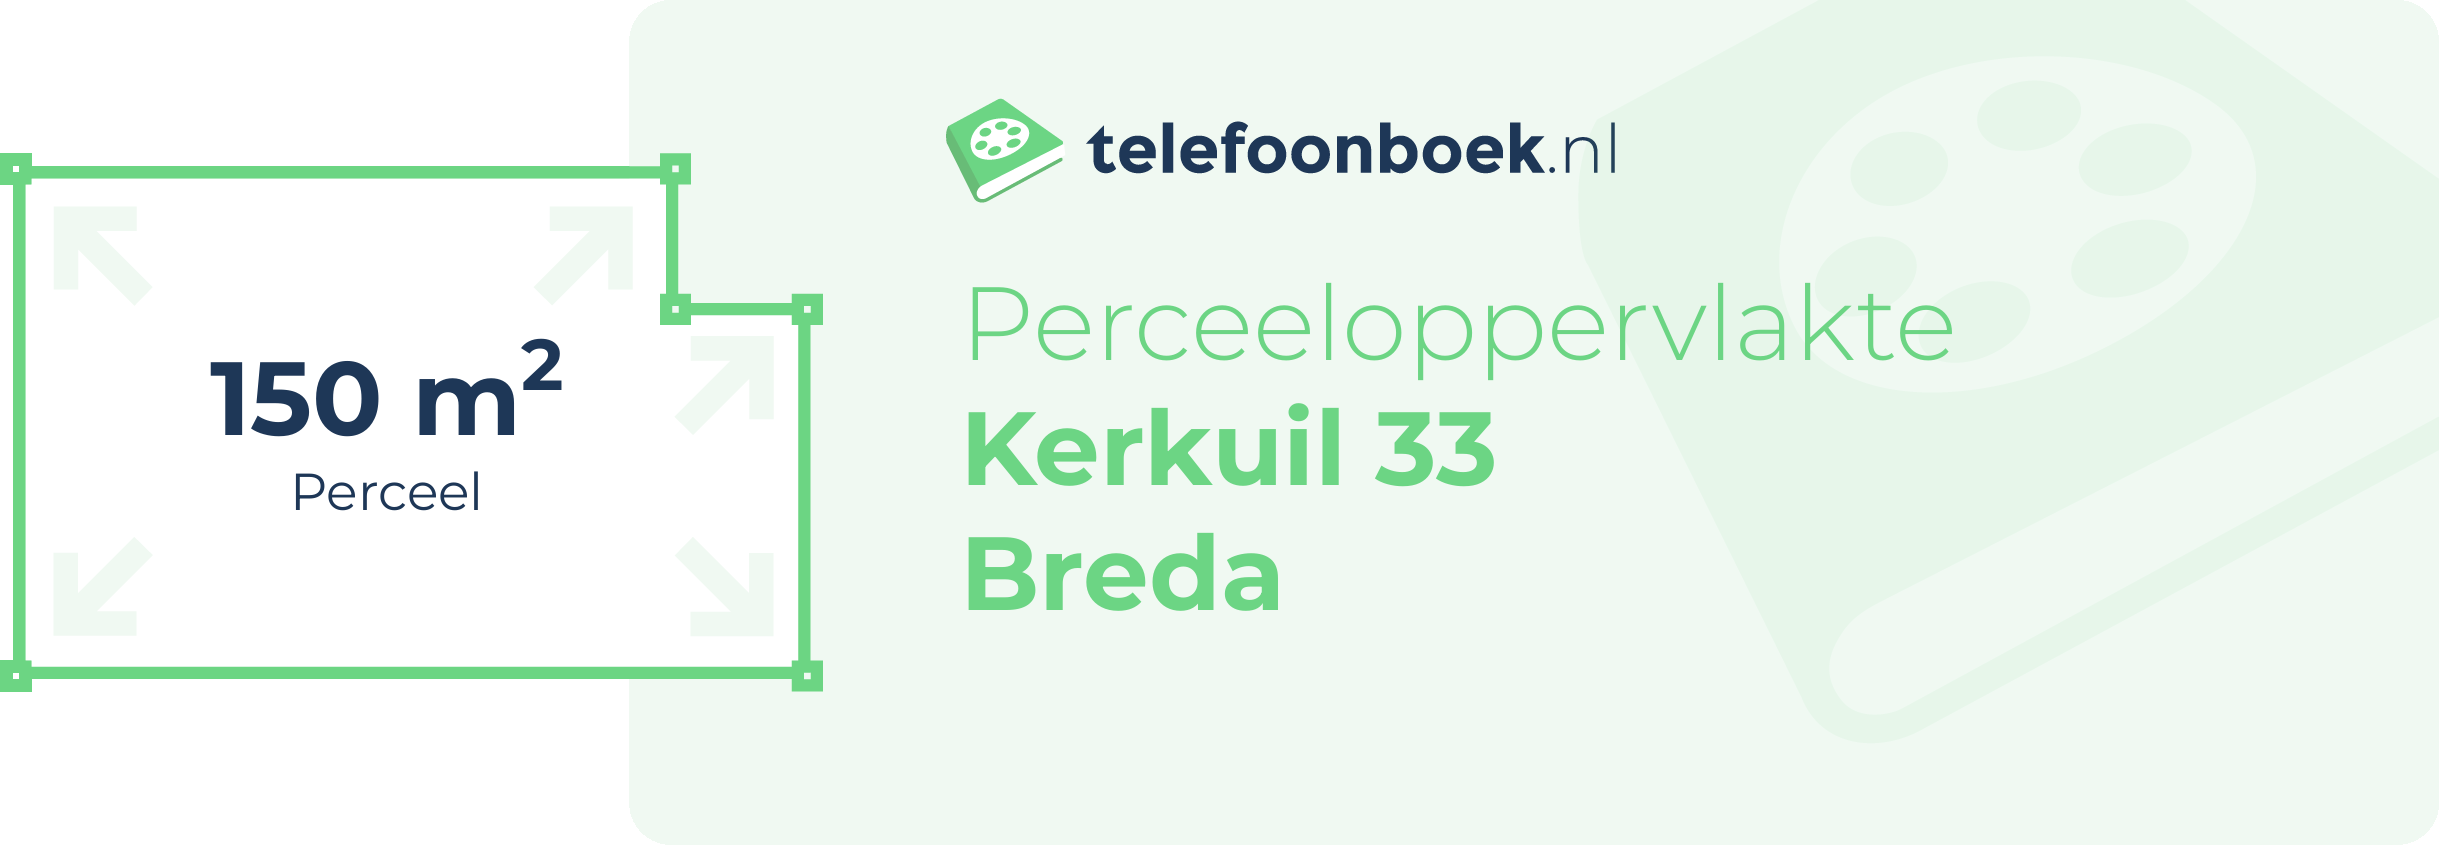 Perceeloppervlakte Kerkuil 33 Breda